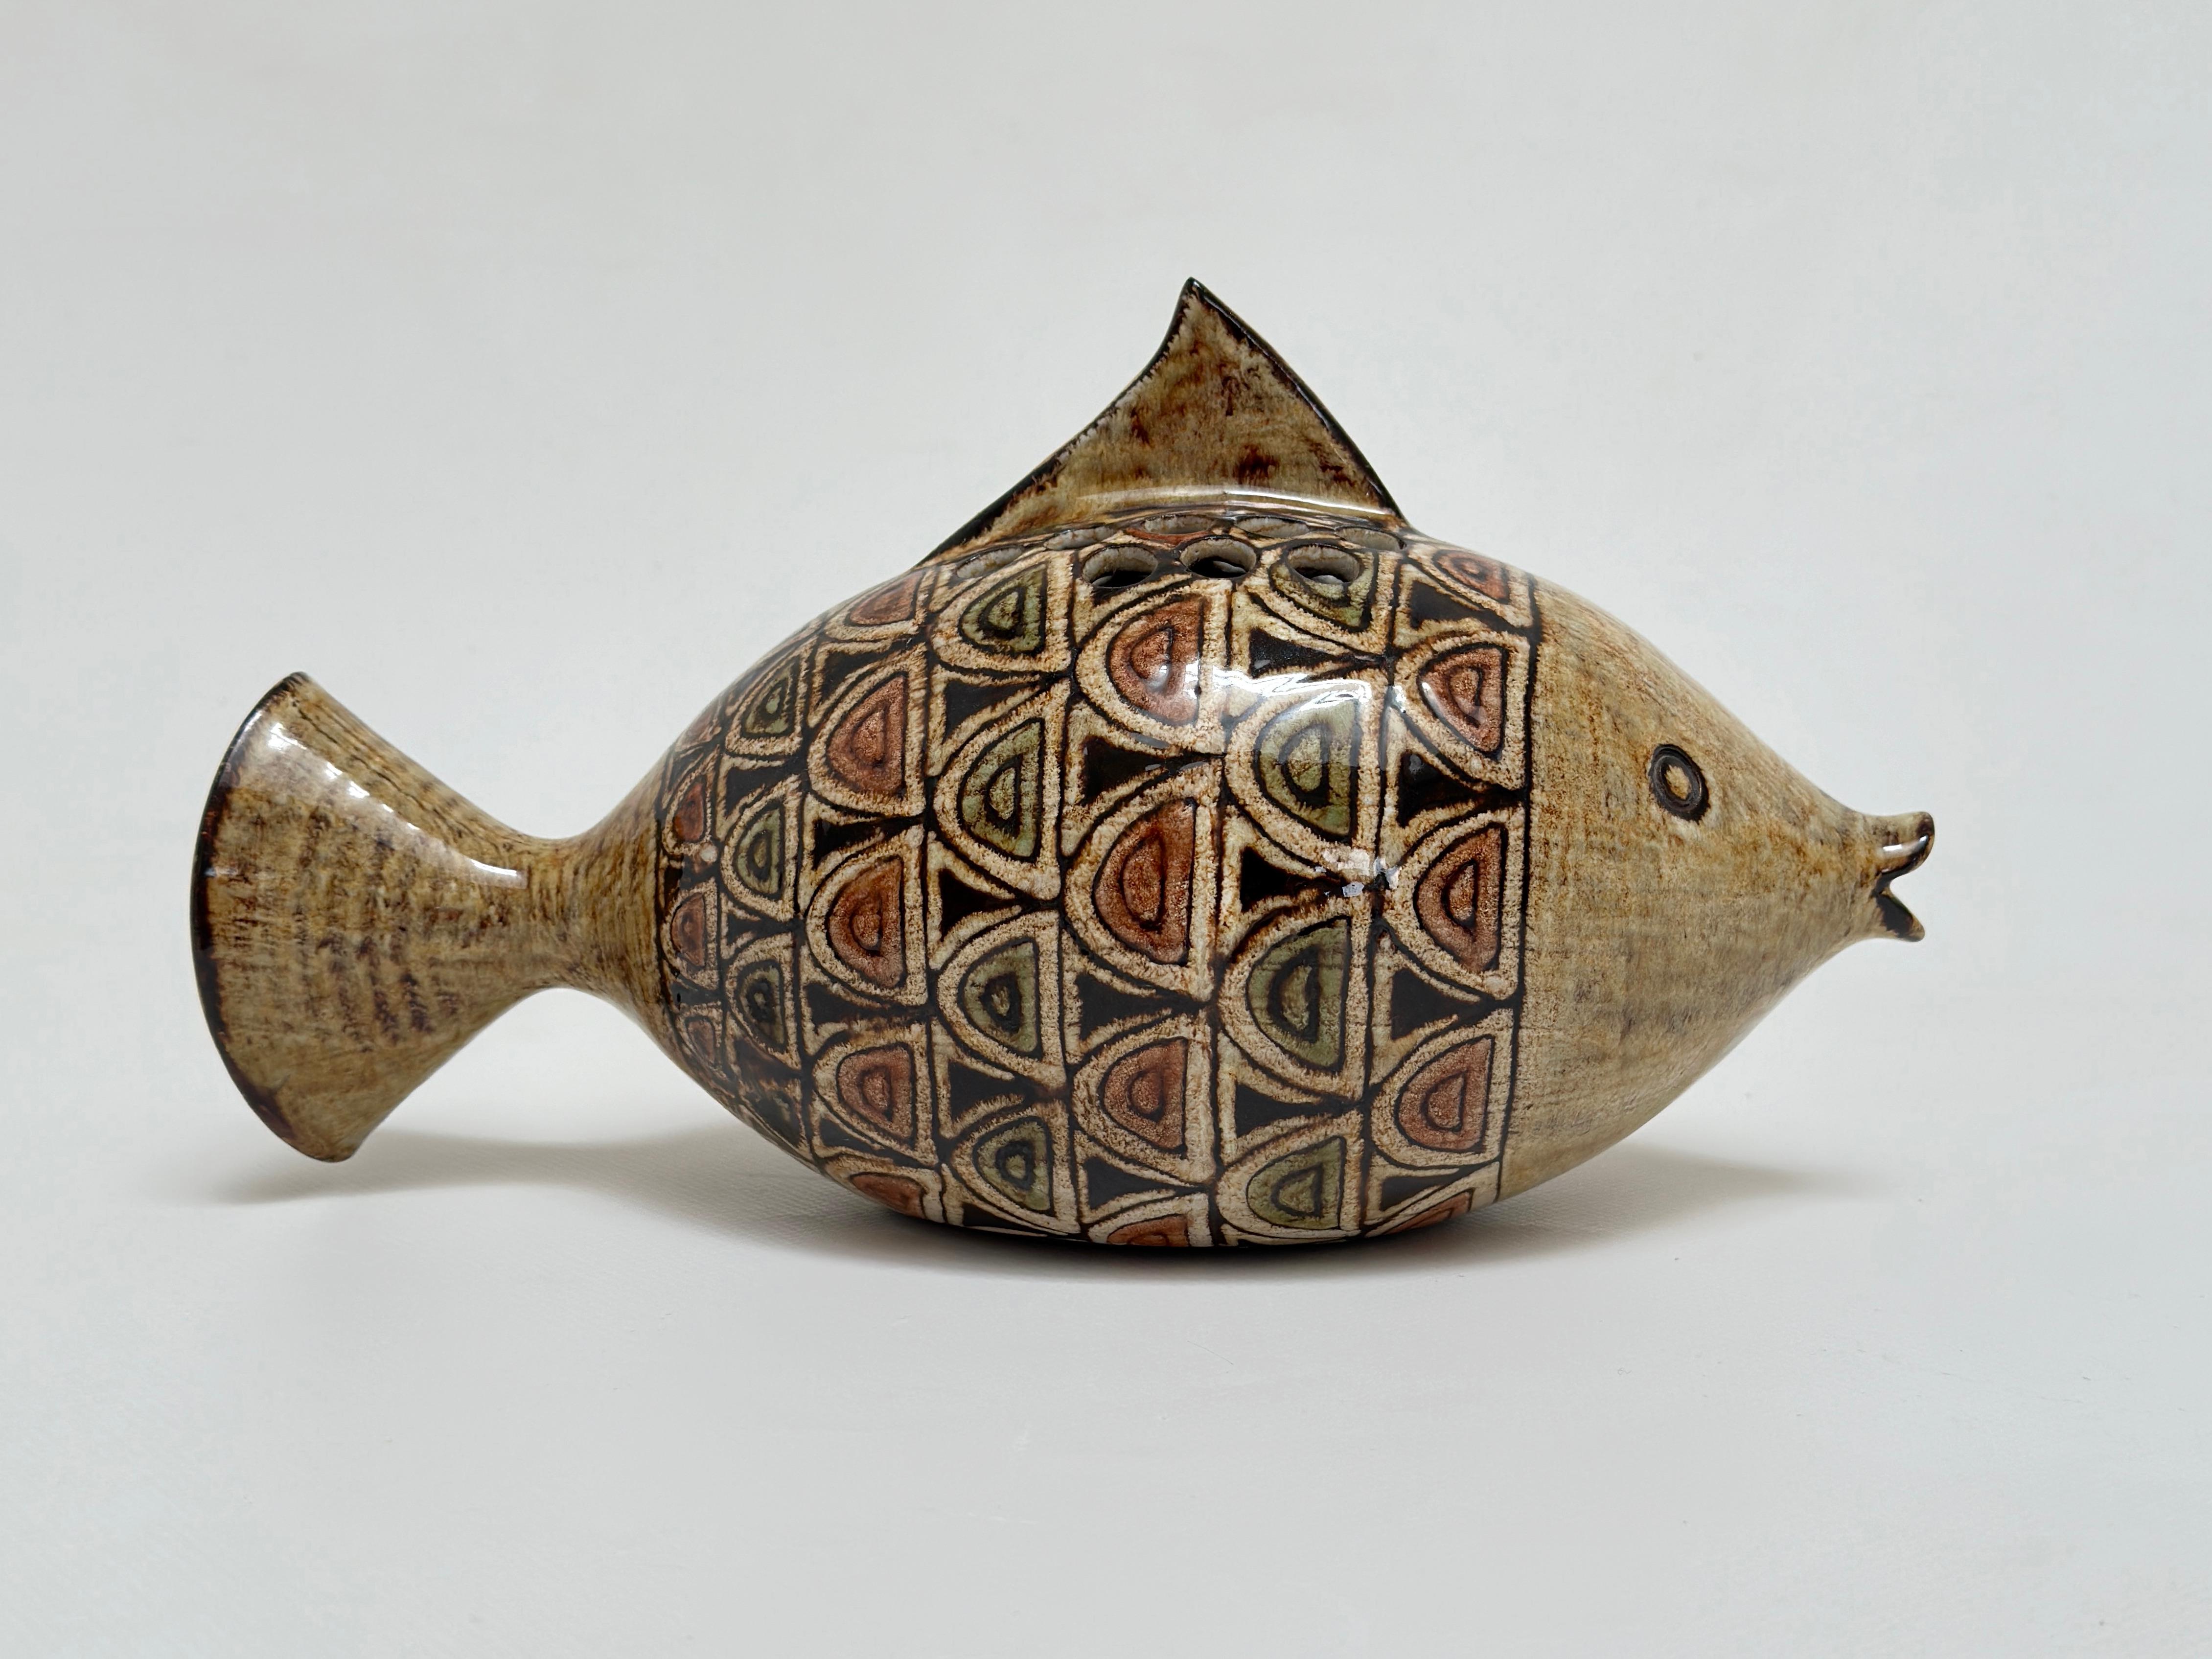 Gartenvase in Form eines Fisches in roter Erde aus Vallauris, Glasuren in gedeckten Tönen und Muster, die an orientalische Zierkeramik erinnern.

Jean-Claude Malarmey, Absolvent der Ecole des Beaux Arts in Reims, schloss sich 1954 seinem